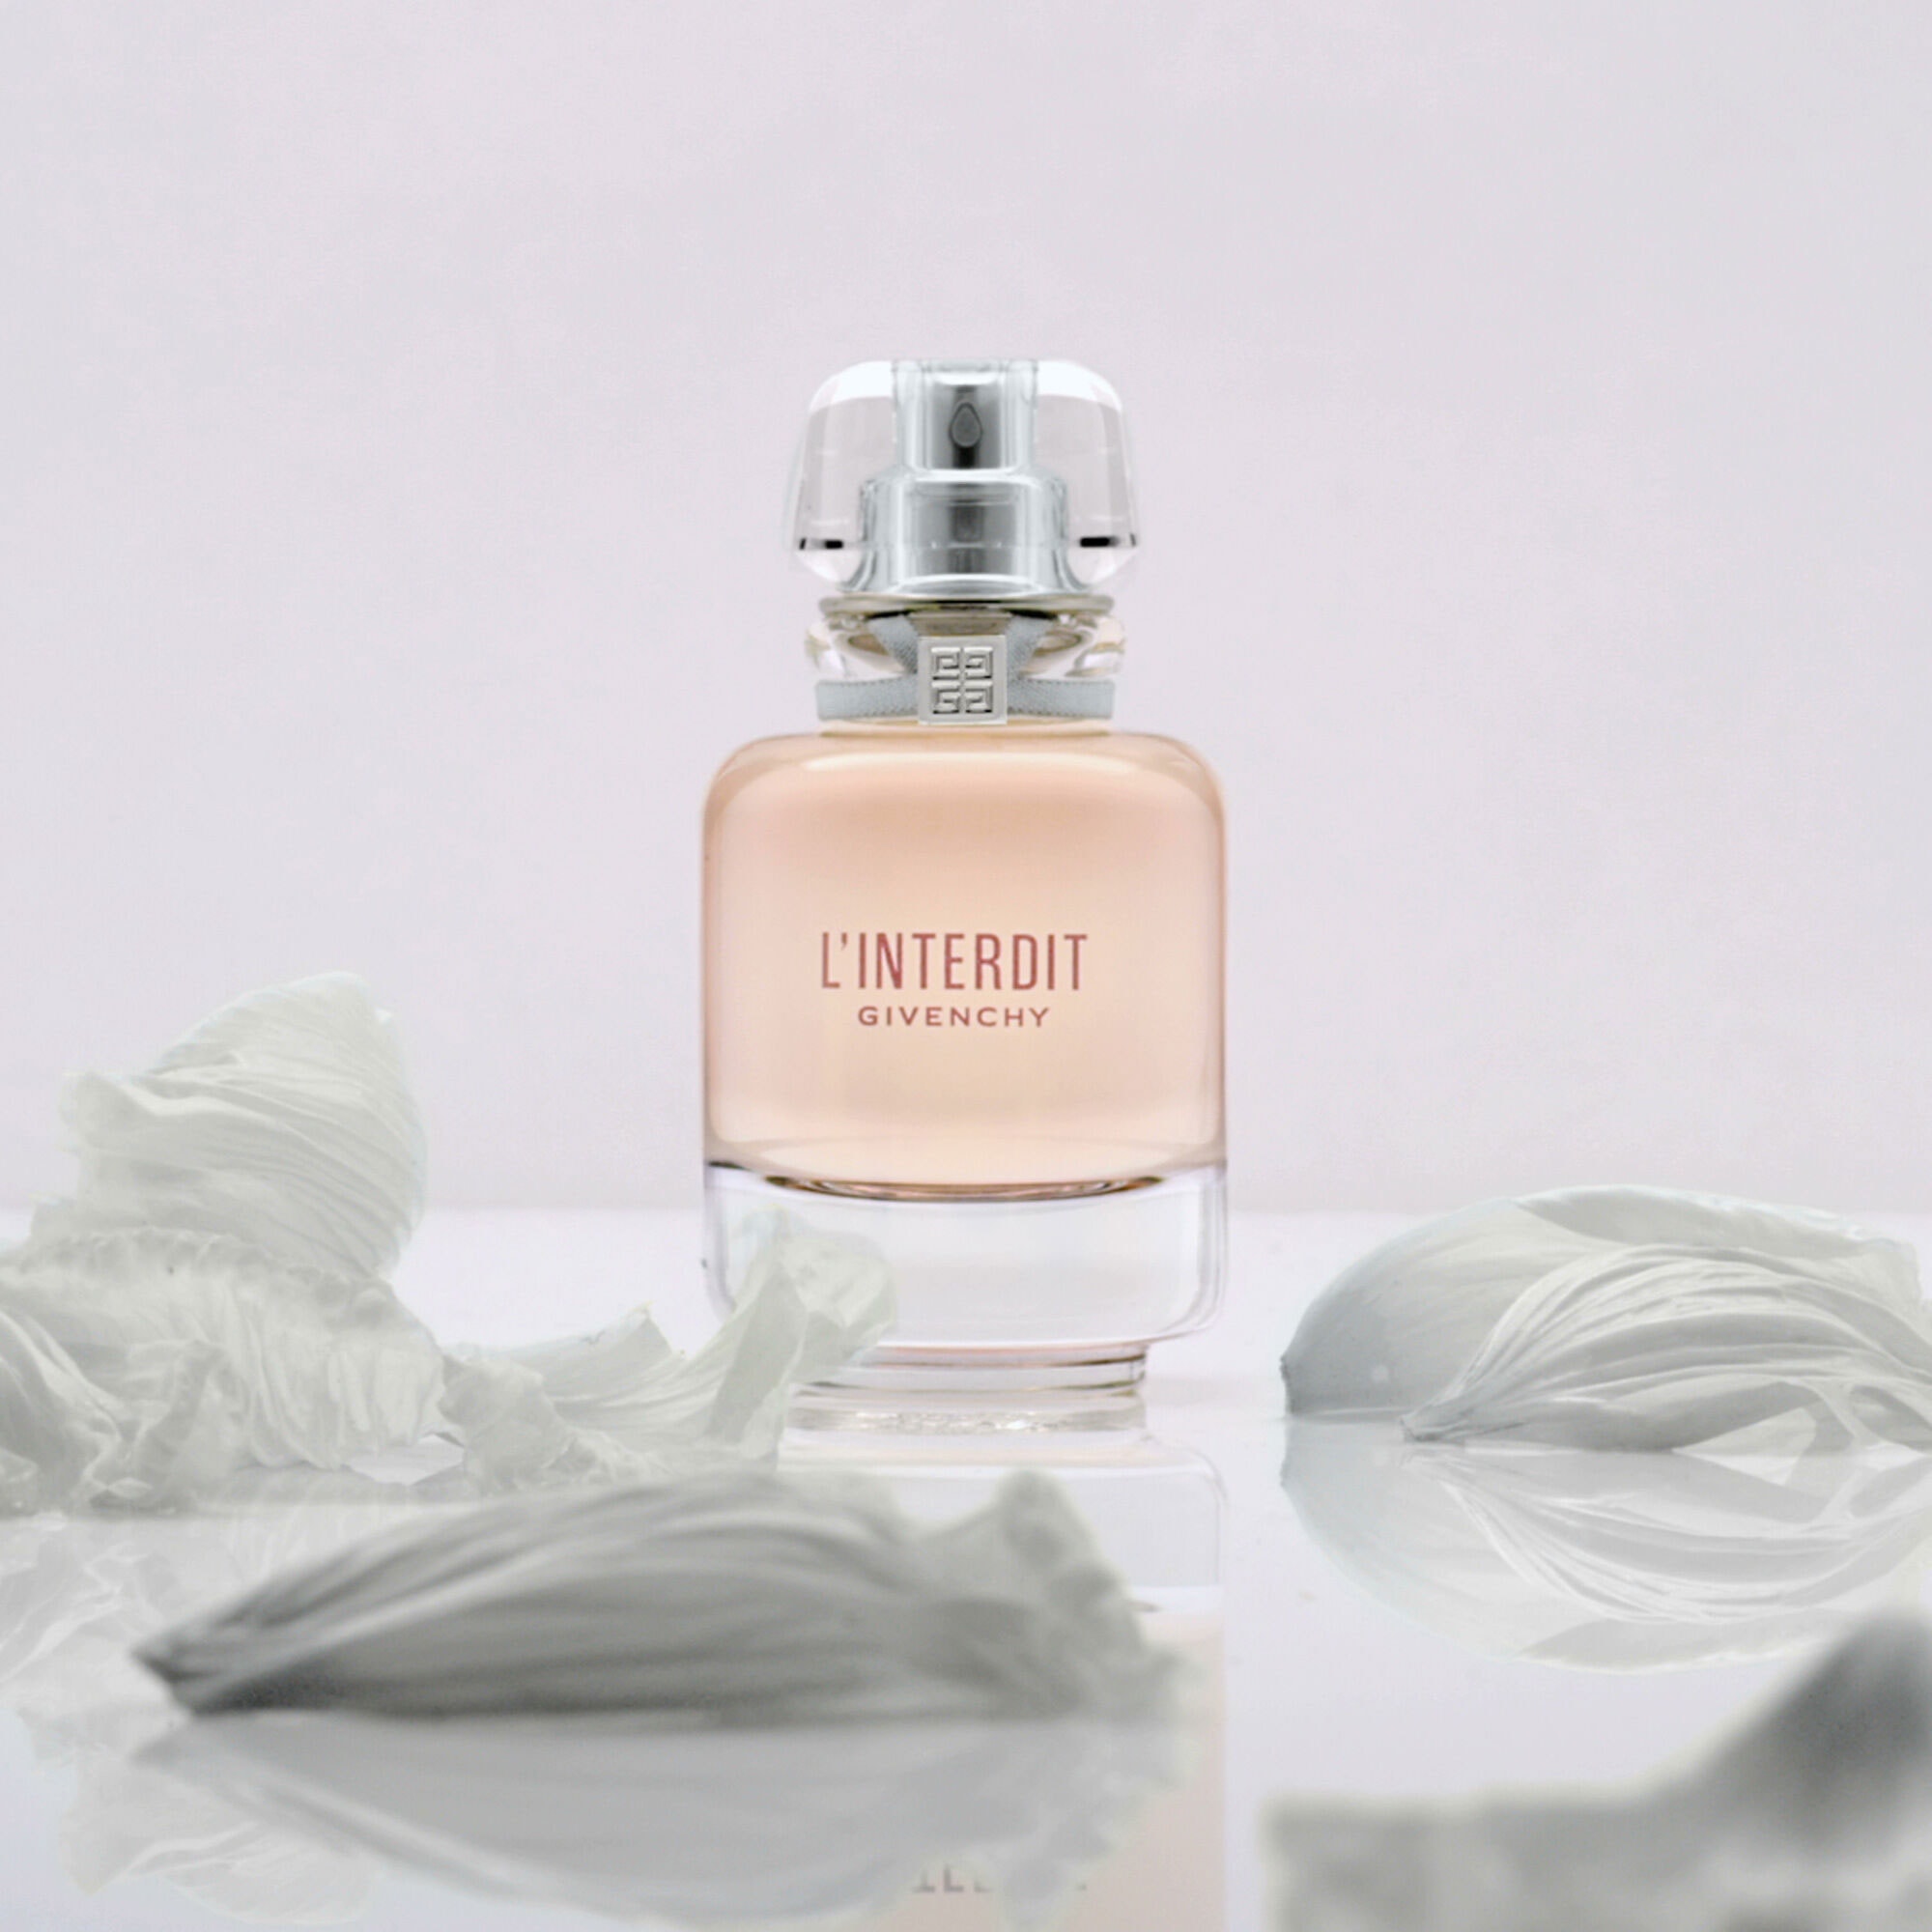 L'interdit Eau De Toilette » Givenchy » The Parfumerie » Sri Lanka